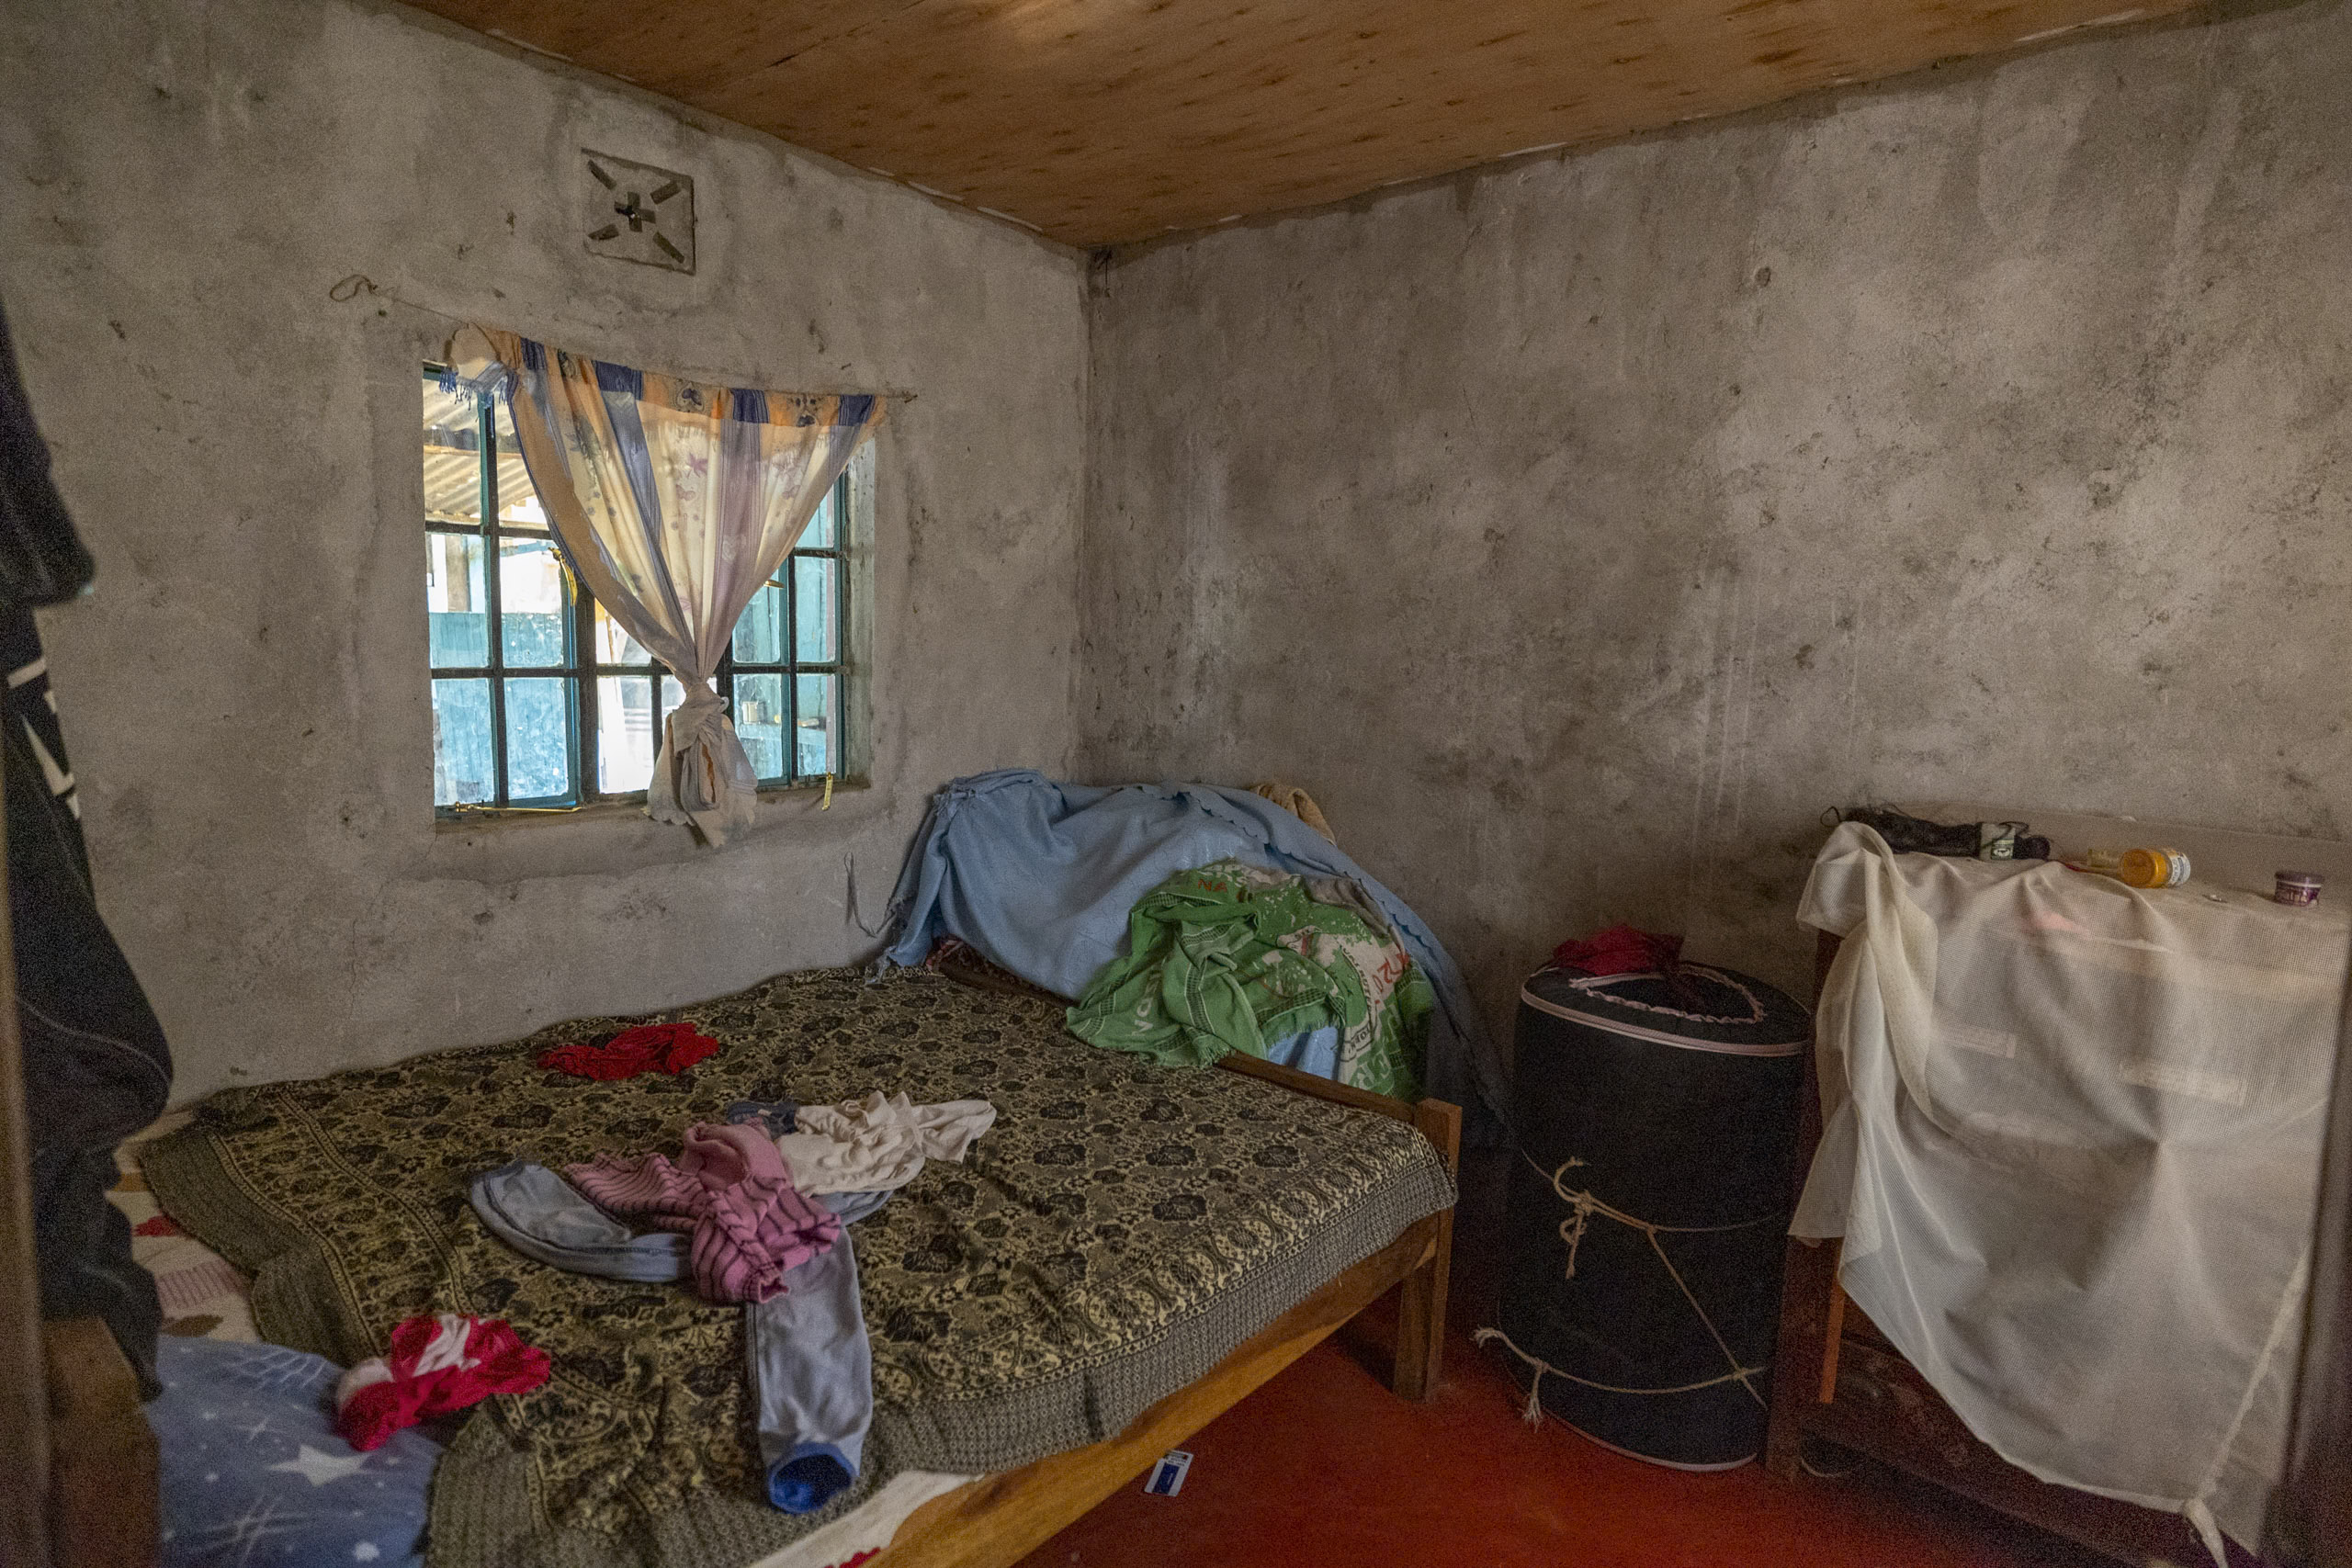 Ein bescheidenes, rustikales Schlafzimmer mit einem Einzelbett, das mit einer gemusterten Decke und verstreuten Kleidungsstücken bedeckt ist, einer Betonwand, einem kleinen Fenster mit Vorhängen und einfacher Einrichtung. © Fotografie Tomas Rodriguez